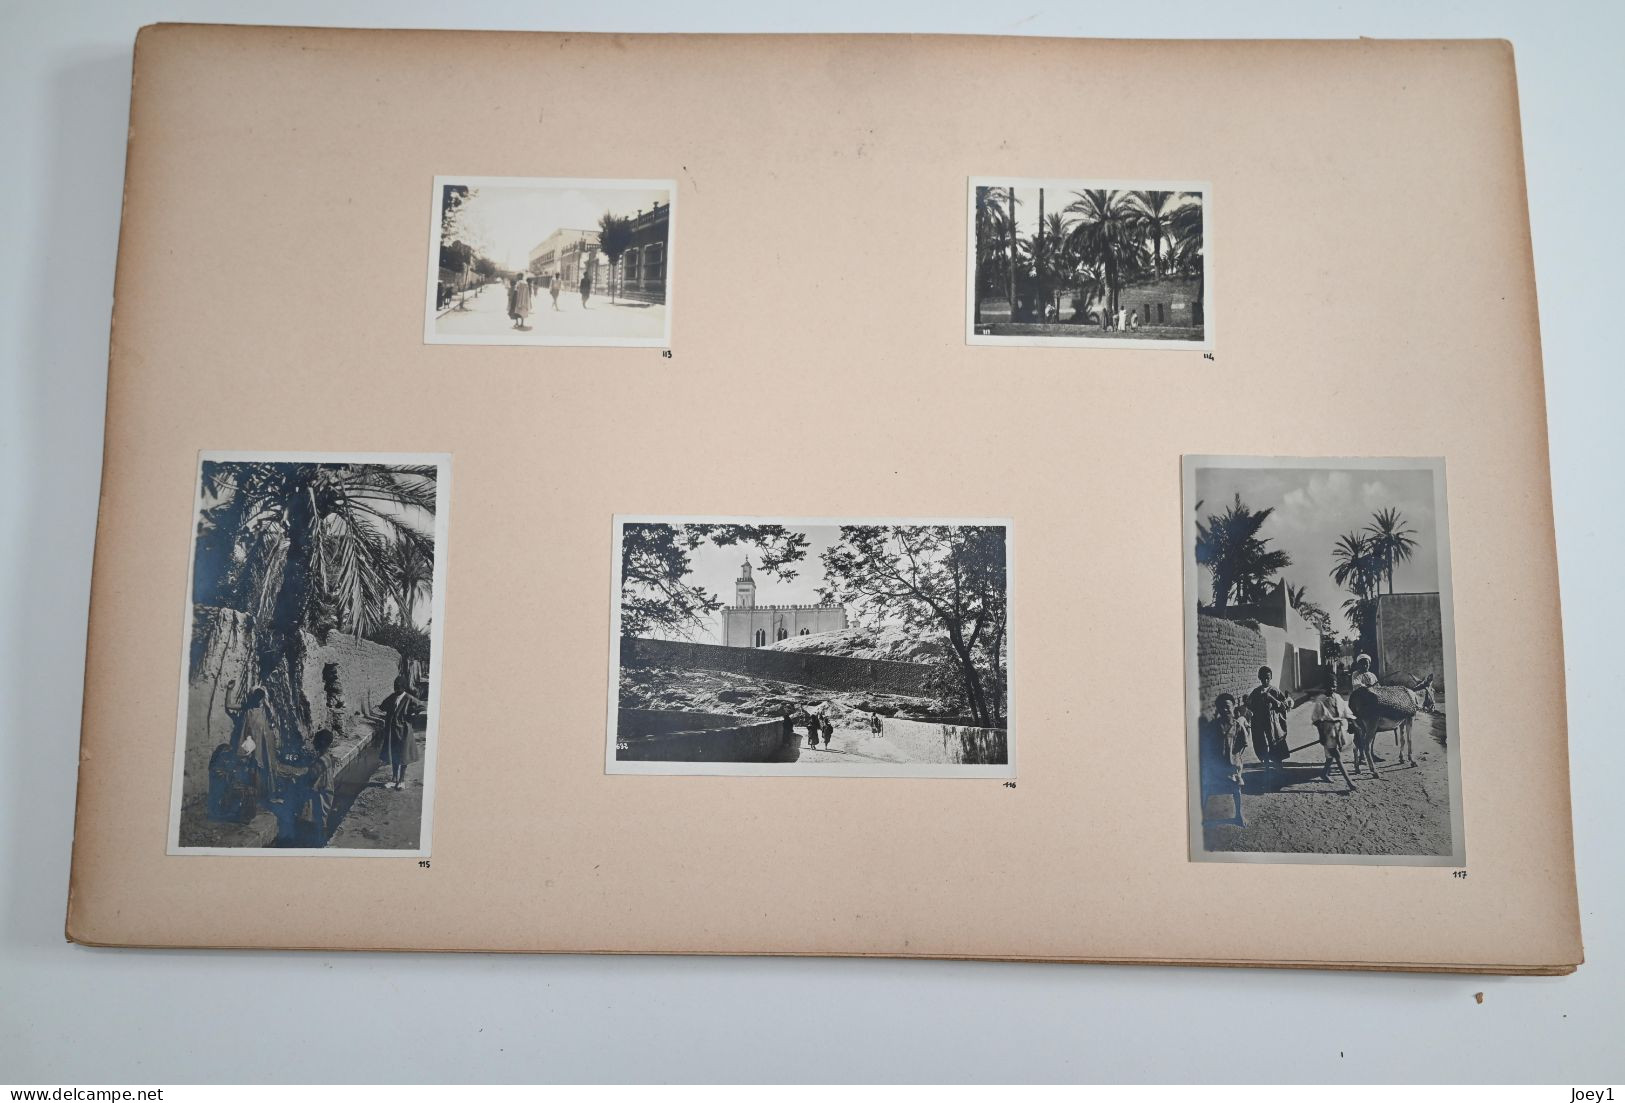 Carnet de voyage en Algérie 1932 Dessins gouaches Photos Cartes postales, présenté en Portfolio, planche format 50/32